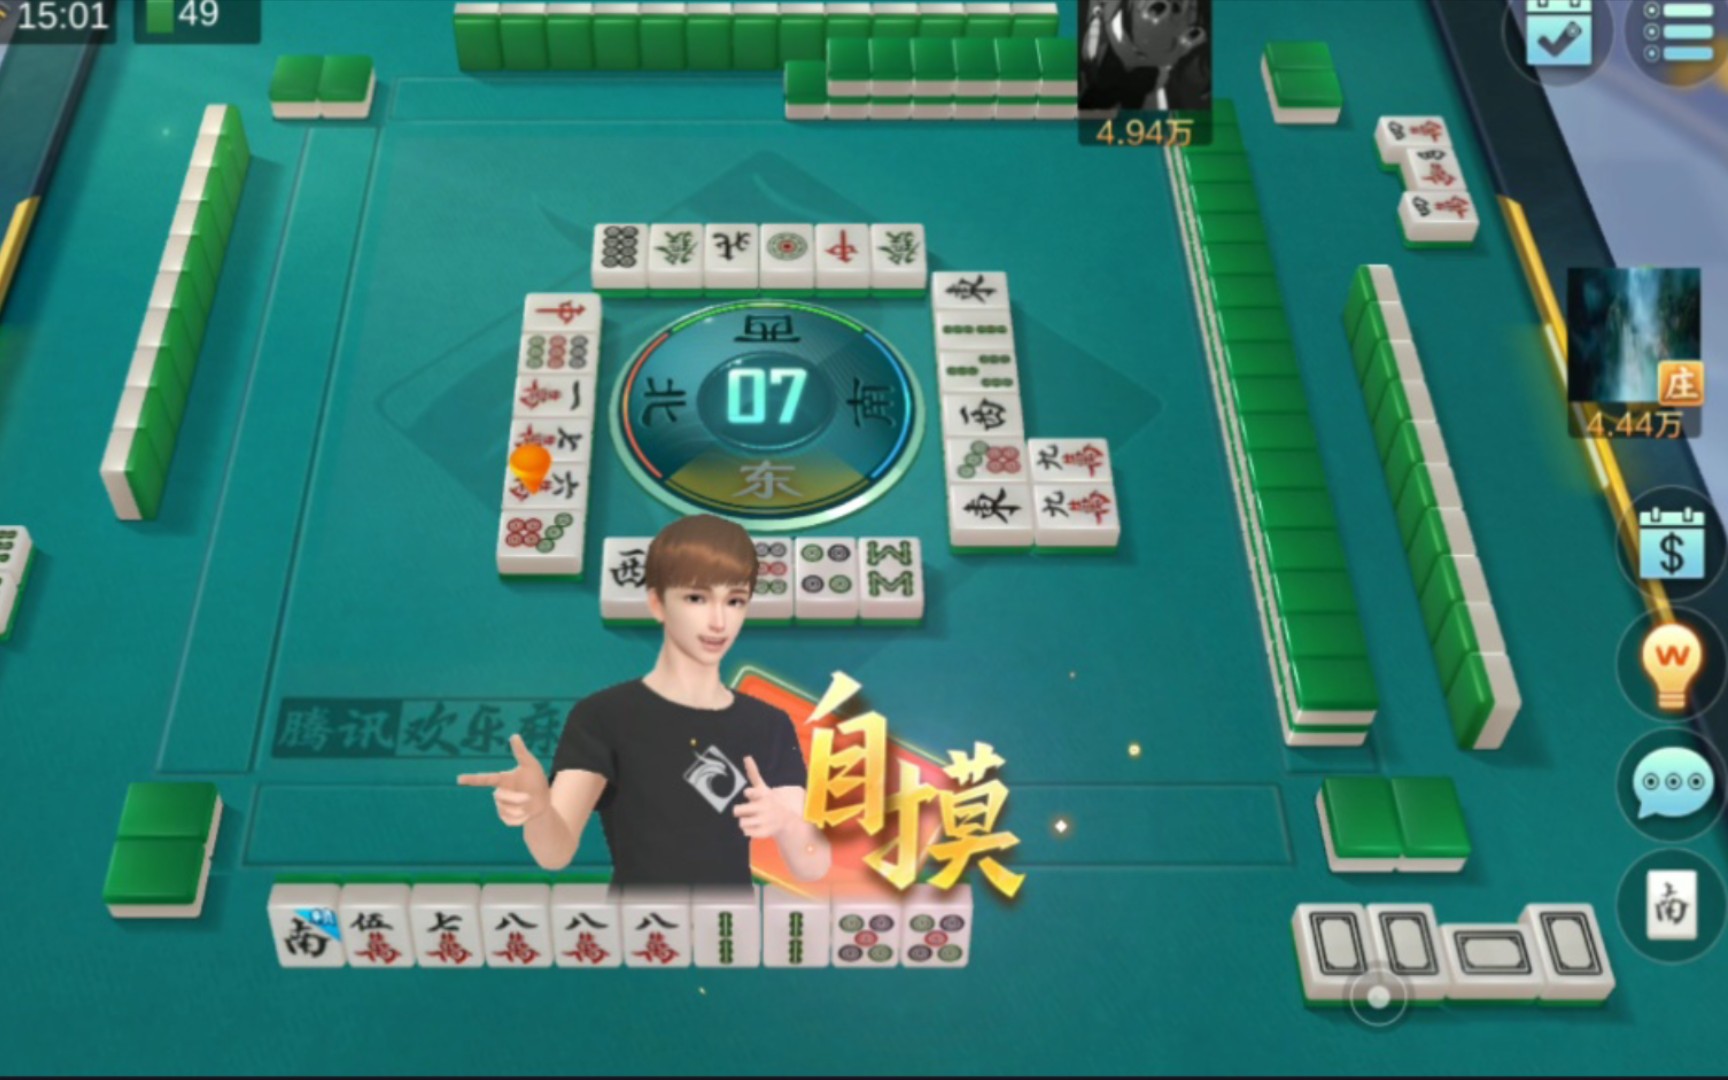 qq game Guangdong Mahjong rules_qq Guangdong Mahjong download mobile version_Tencent Guangdong Mahjong rules